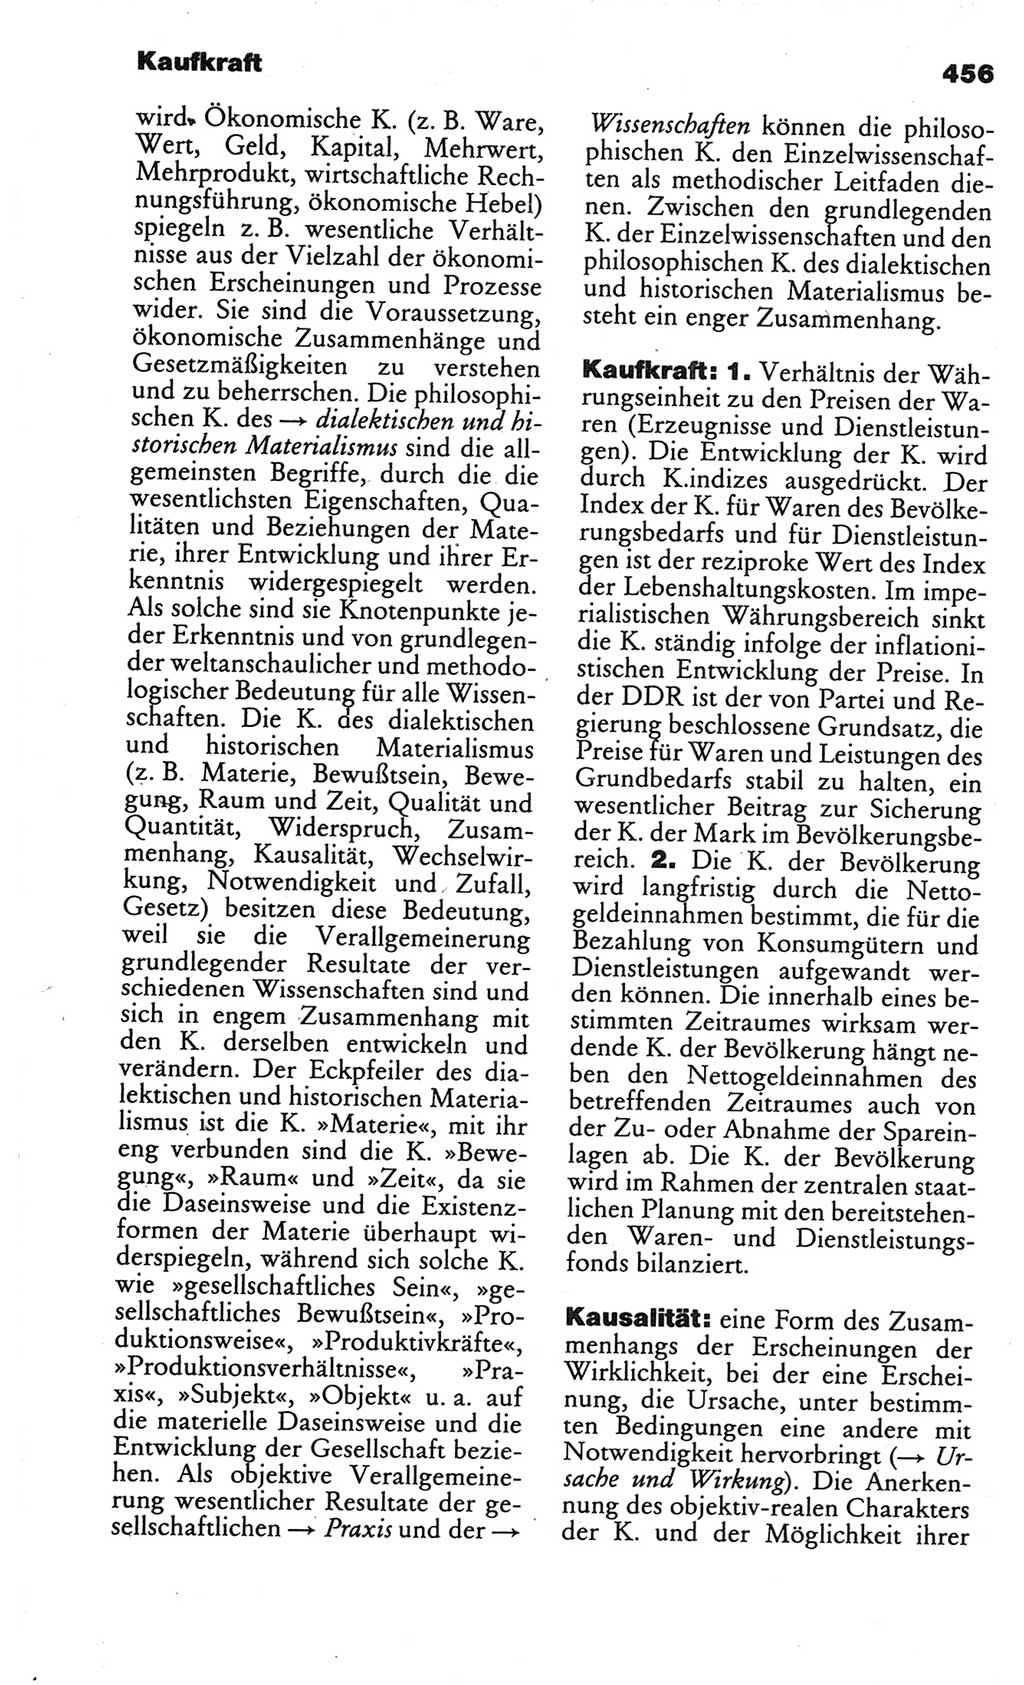 Kleines politisches Wörterbuch [Deutsche Demokratische Republik (DDR)] 1986, Seite 456 (Kl. pol. Wb. DDR 1986, S. 456)